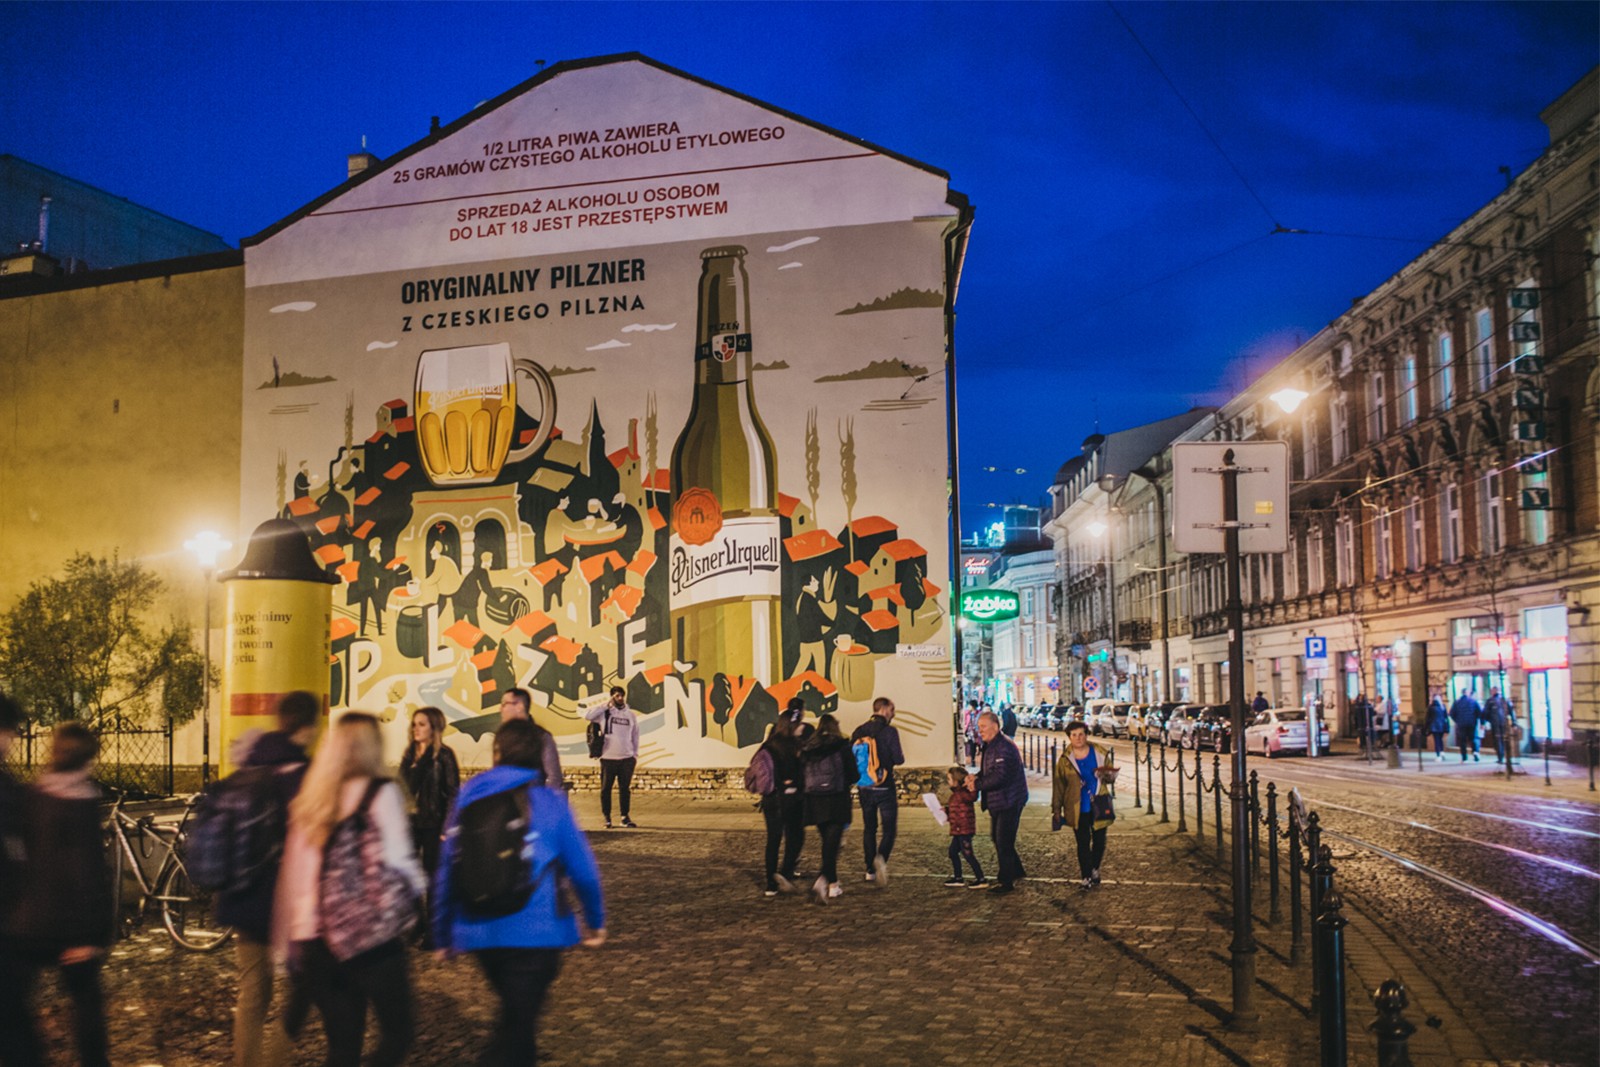 Mural advertising beer for Pilsner Urquell in Krakow | Original pilsner from Czech Pilsen | Portfolio